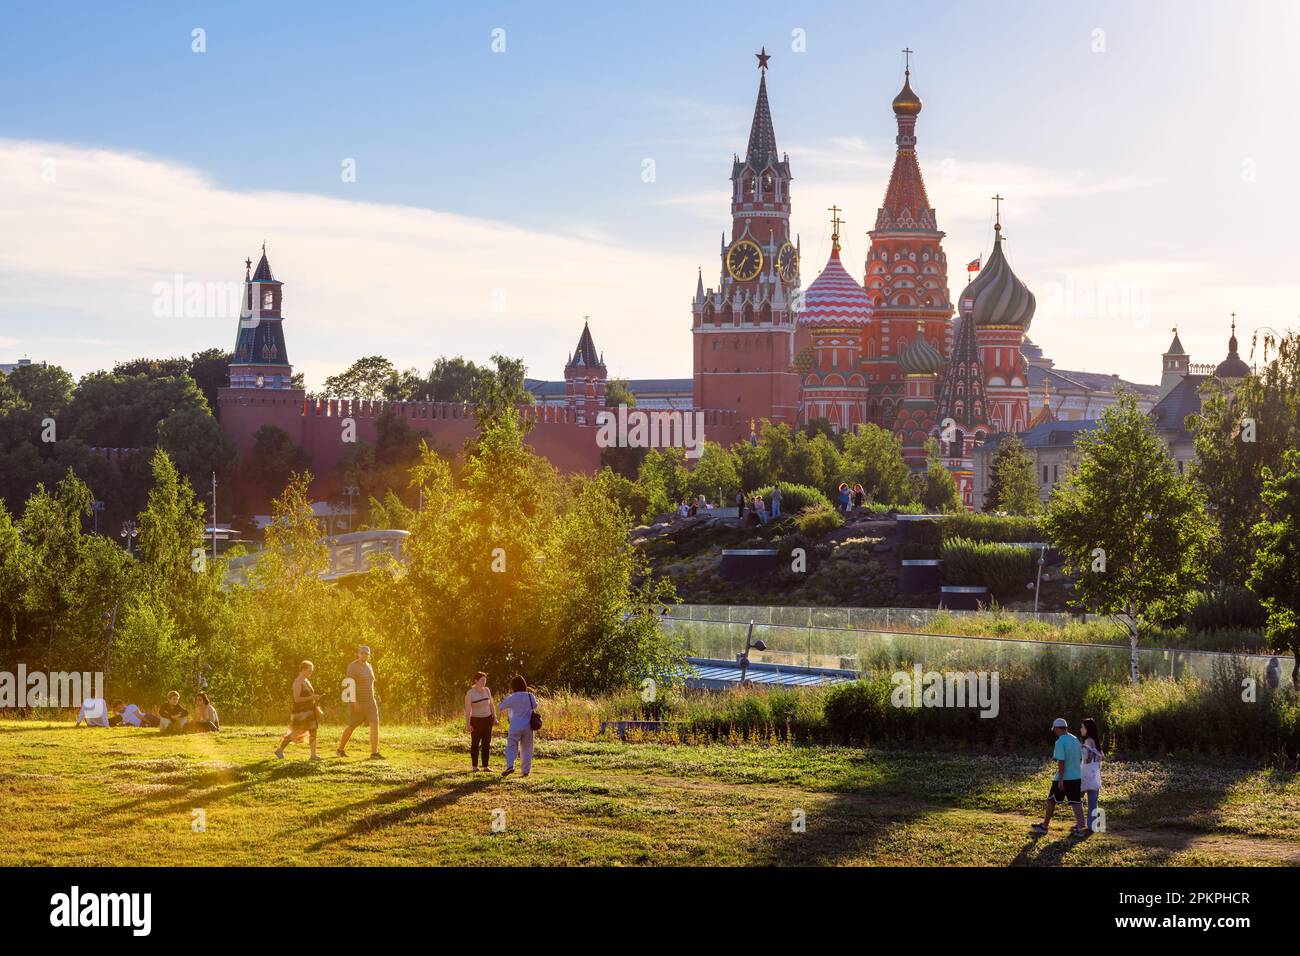 Les gens marchent dans le parc Zaryadye, Moscou, Russie. Cet endroit est une attraction touristique de la ville. Kremlin de Moscou et cathédrale Saint-Basile Banque D'Images